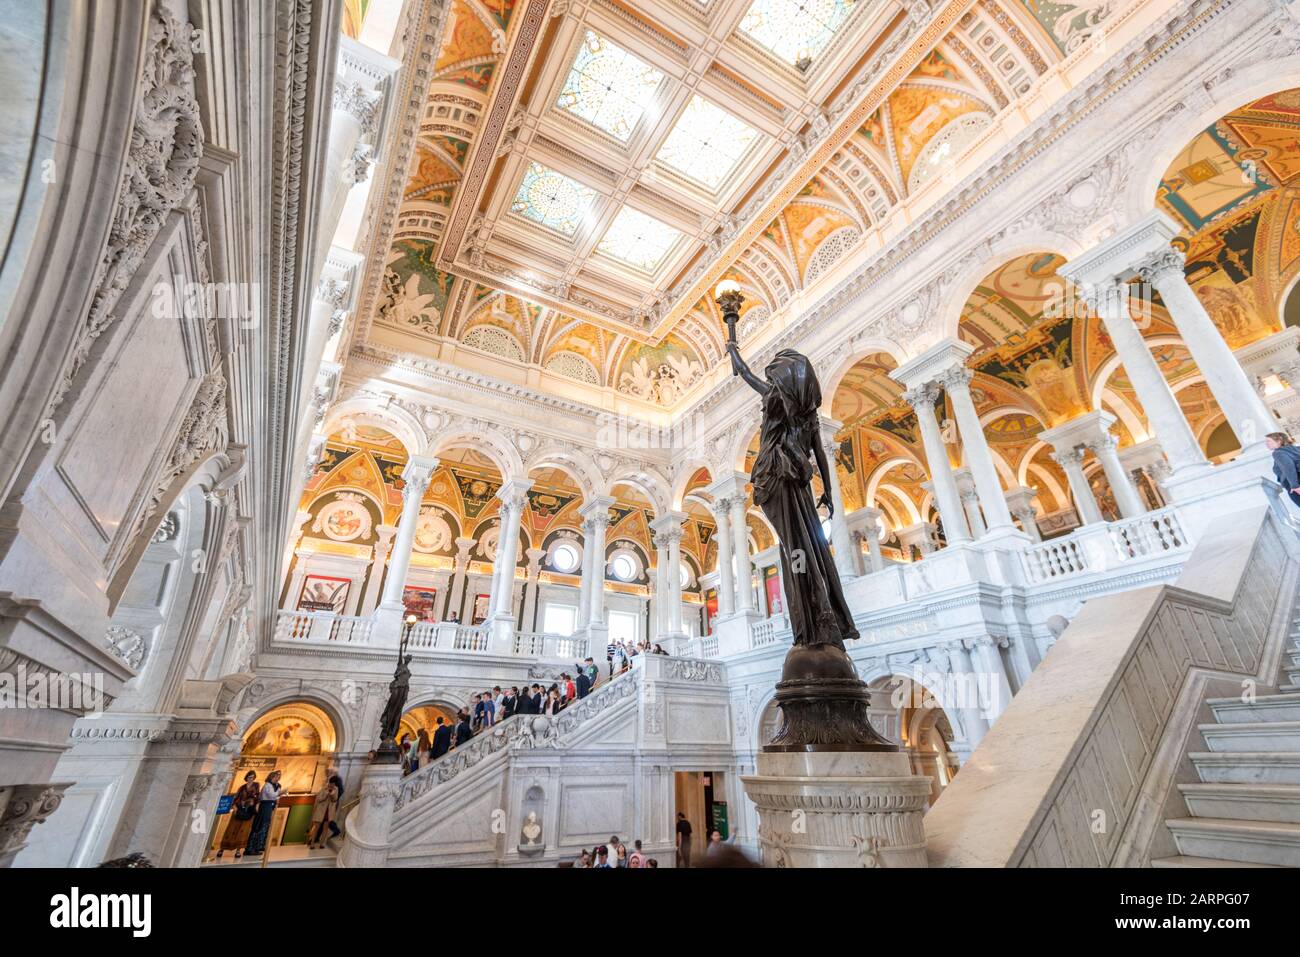 Washington - 12 AVRIL 2015 : plafond du hall d'entrée de la Bibliothèque du Congrès. La bibliothèque sert officiellement le Congrès américain. Banque D'Images